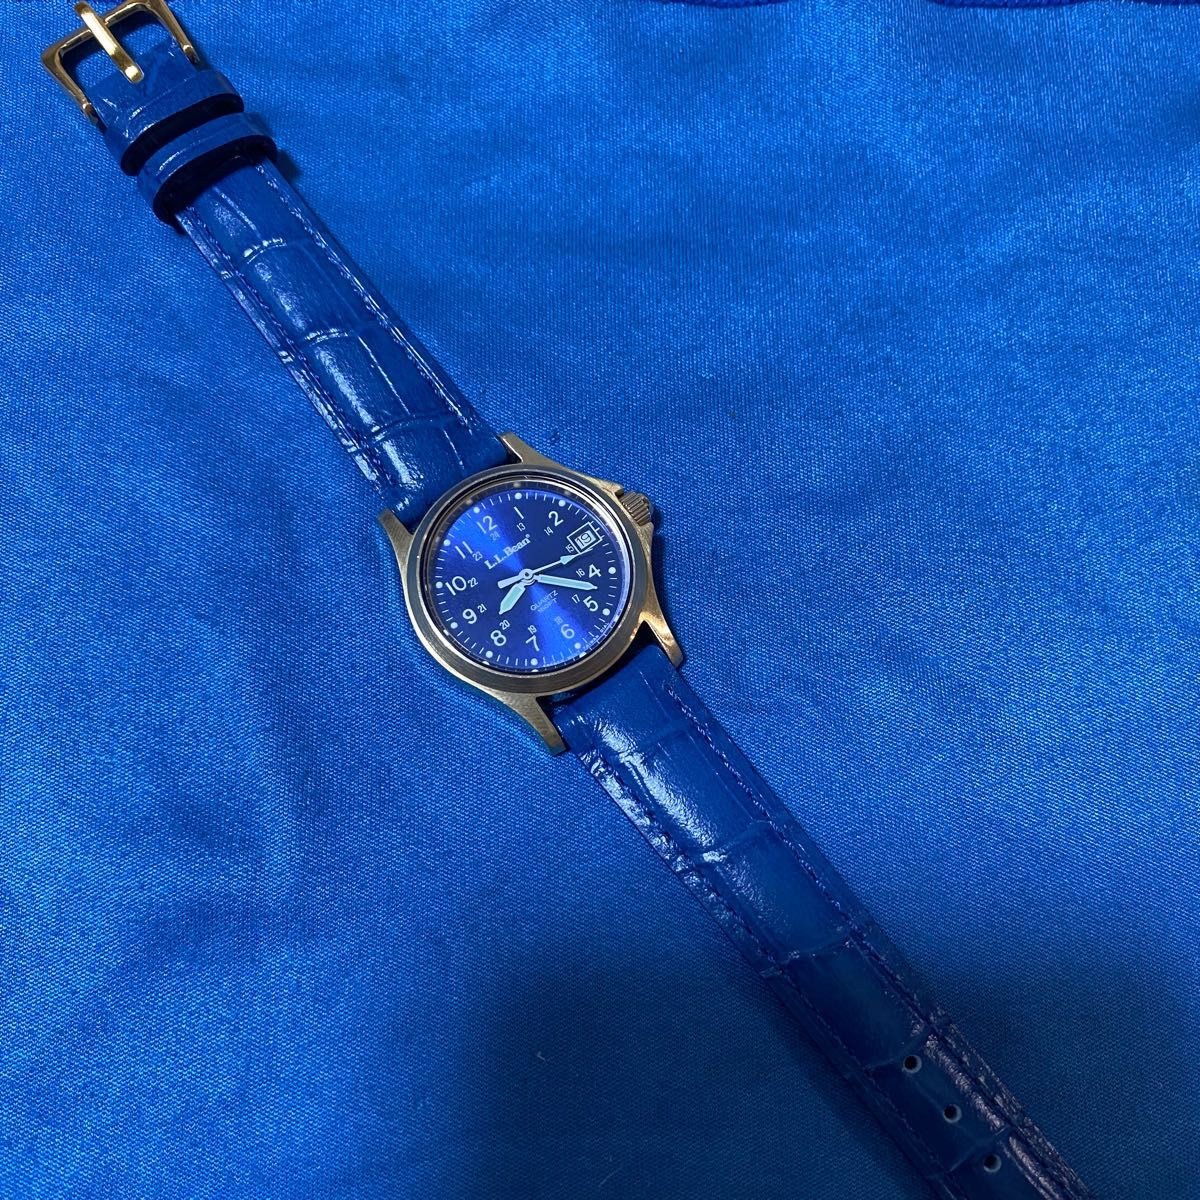 ★レア！　L.L.Bean エルエルビーン　腕時計　レディース/ブルー文字盤・イエローゴールド色・レザーベルト